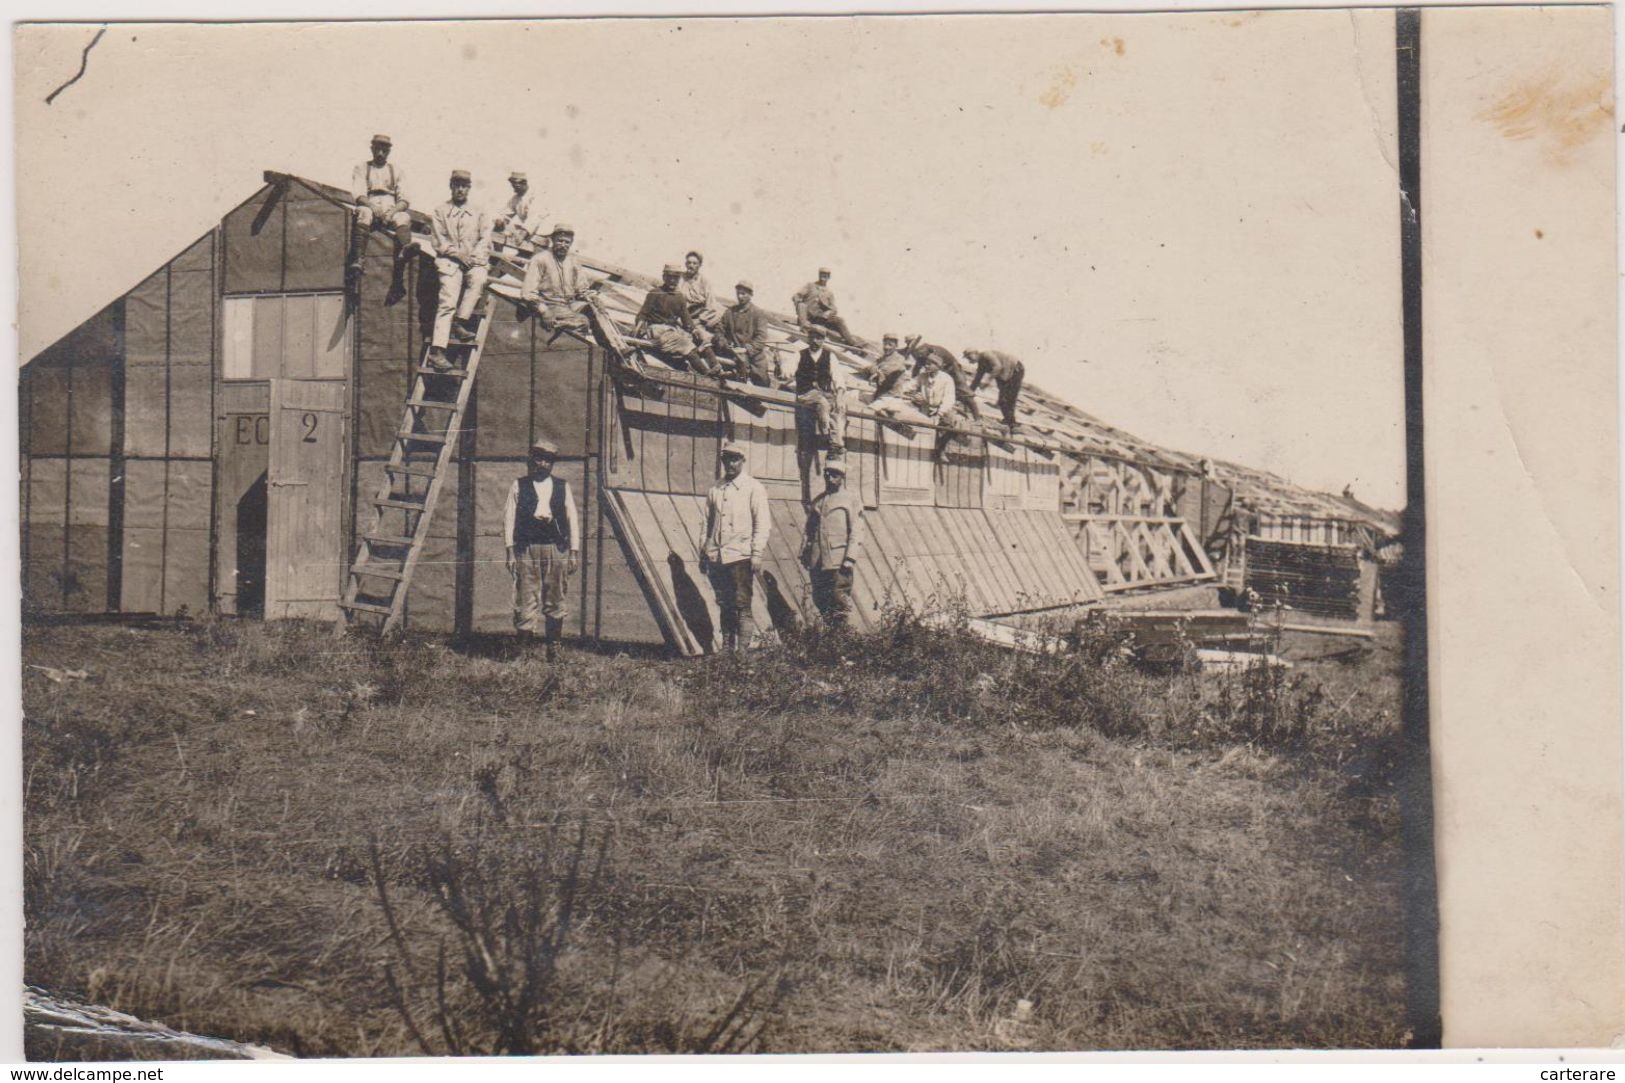 CARTE PHOTO,GUERRE 14-18,MILITAIRE,PRISONNIERS,PRISONNIER DE GUERRE,EN 1916,LUDWIGSBURG,LUDWIGSB OURG,TRAVAIL,CHARPENTE - Weltkrieg 1914-18